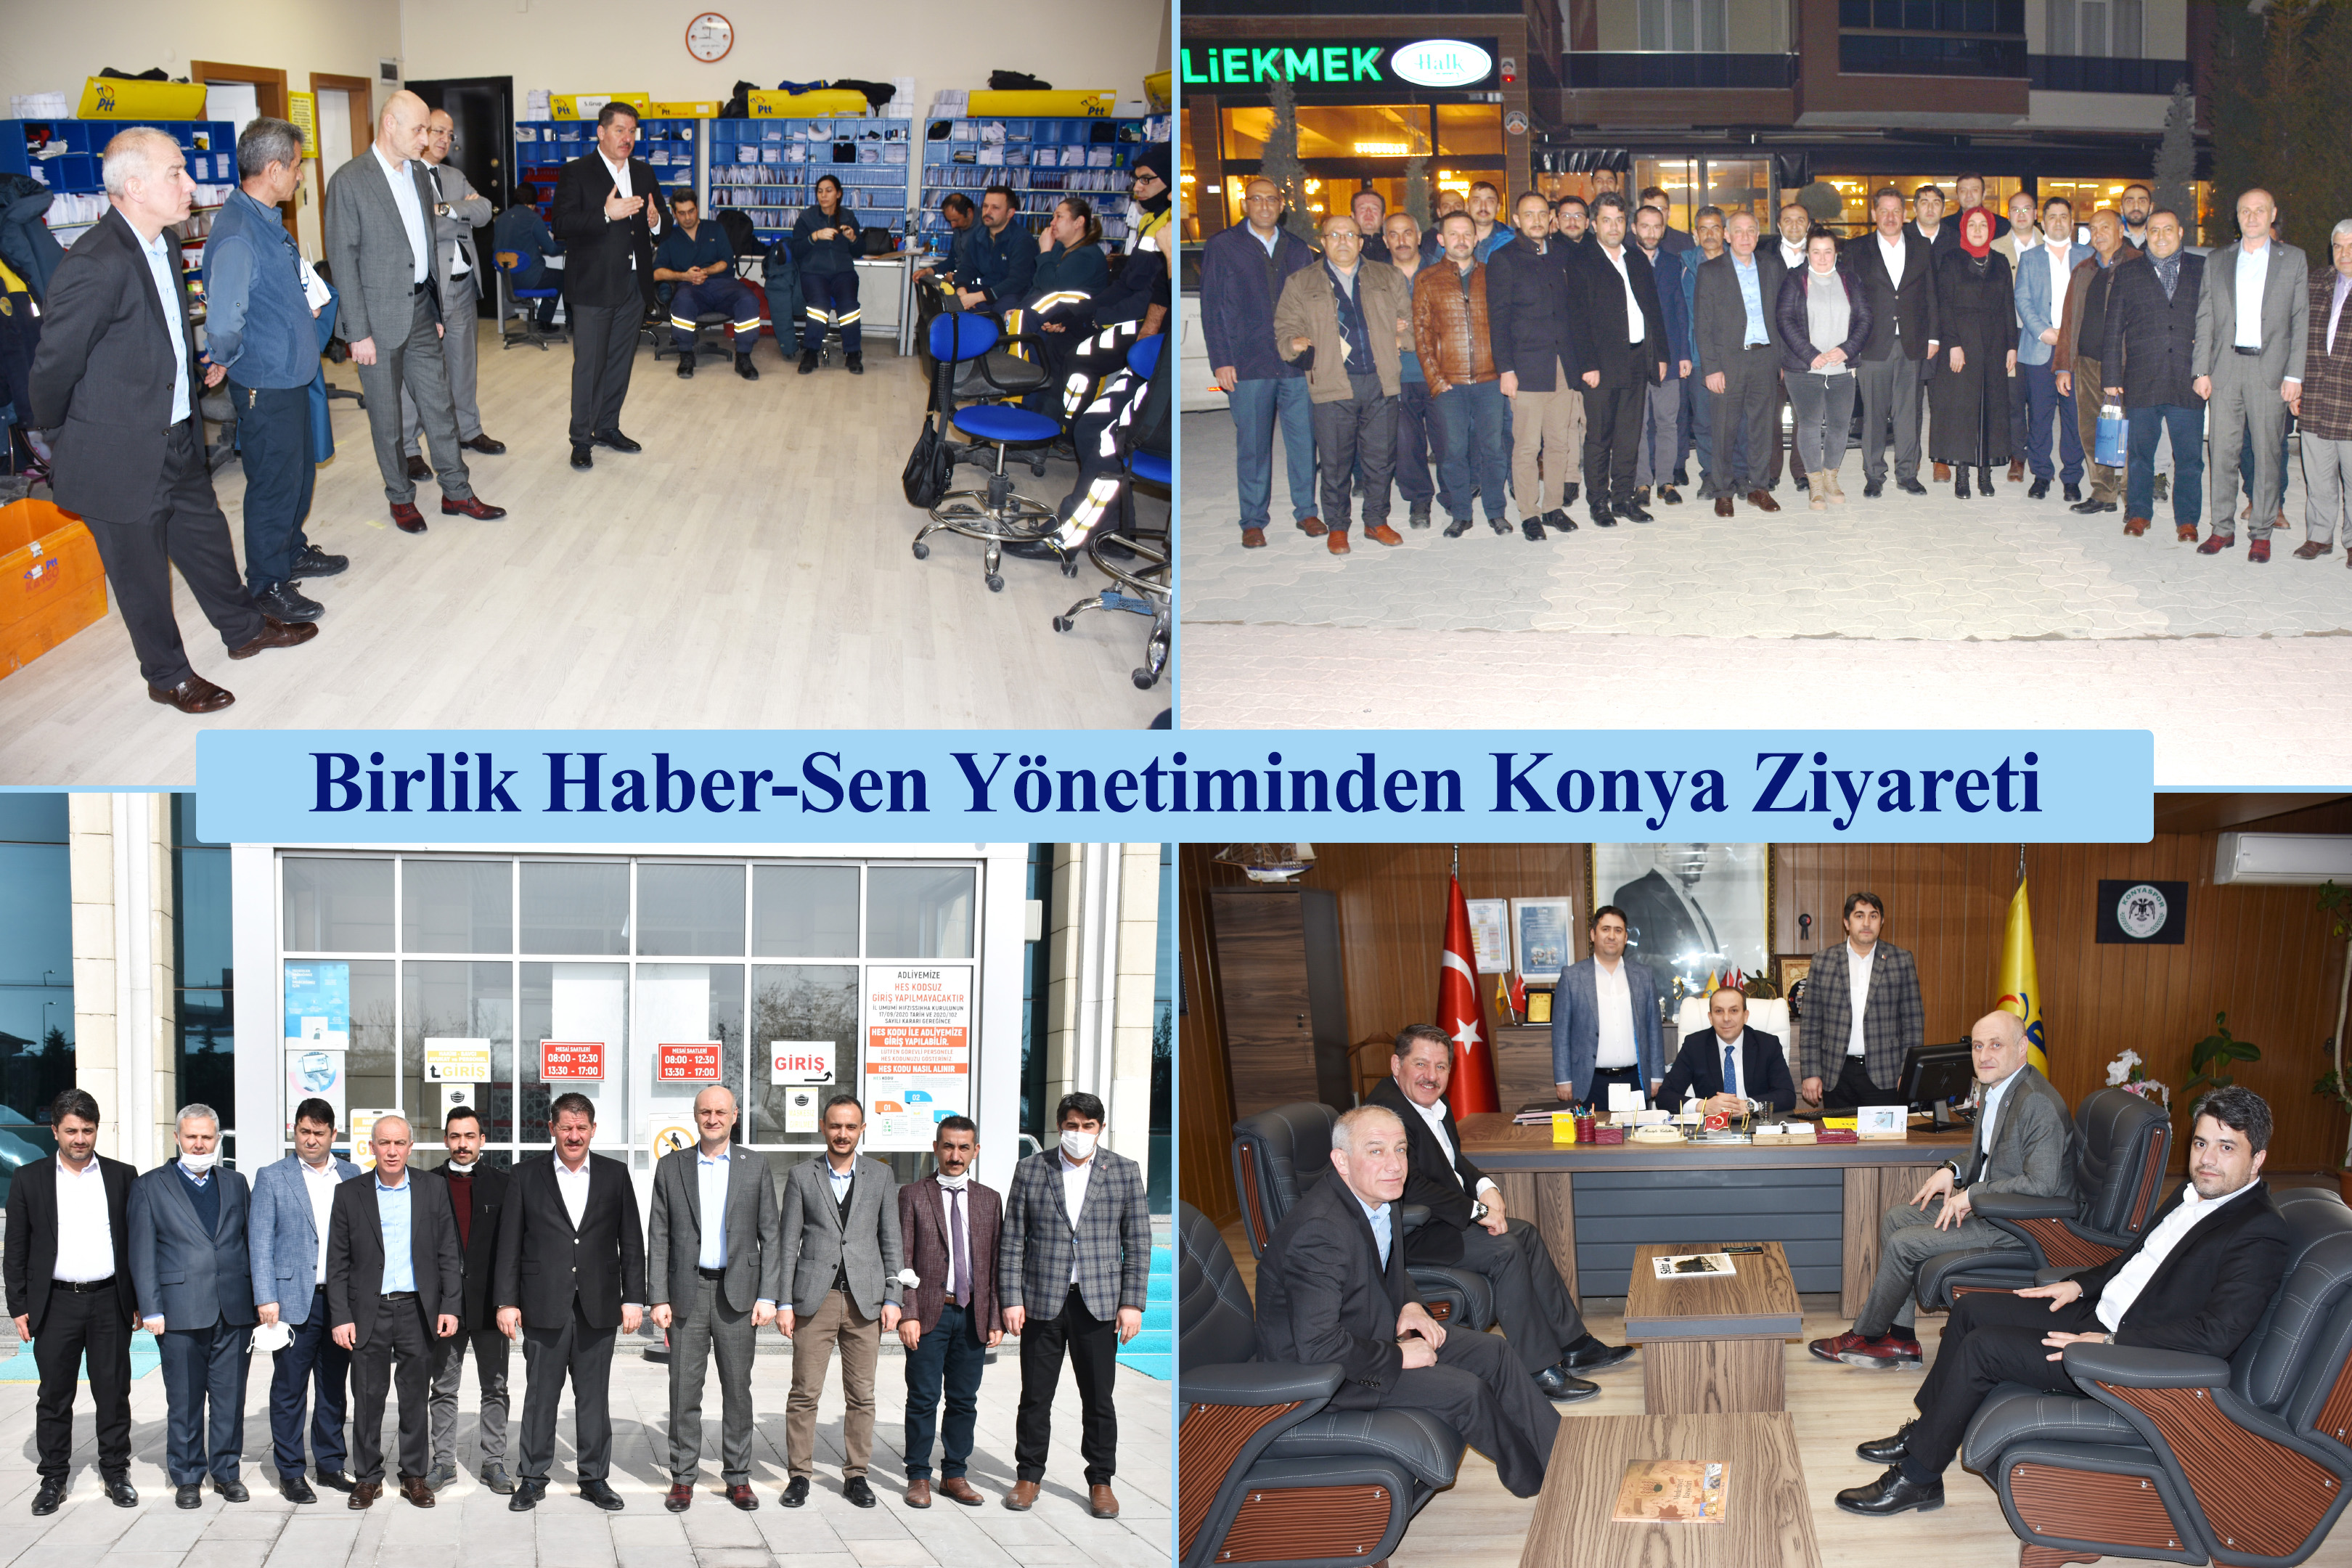 Birlik Haber-Sen Yönetiminden Konya Ziyareti